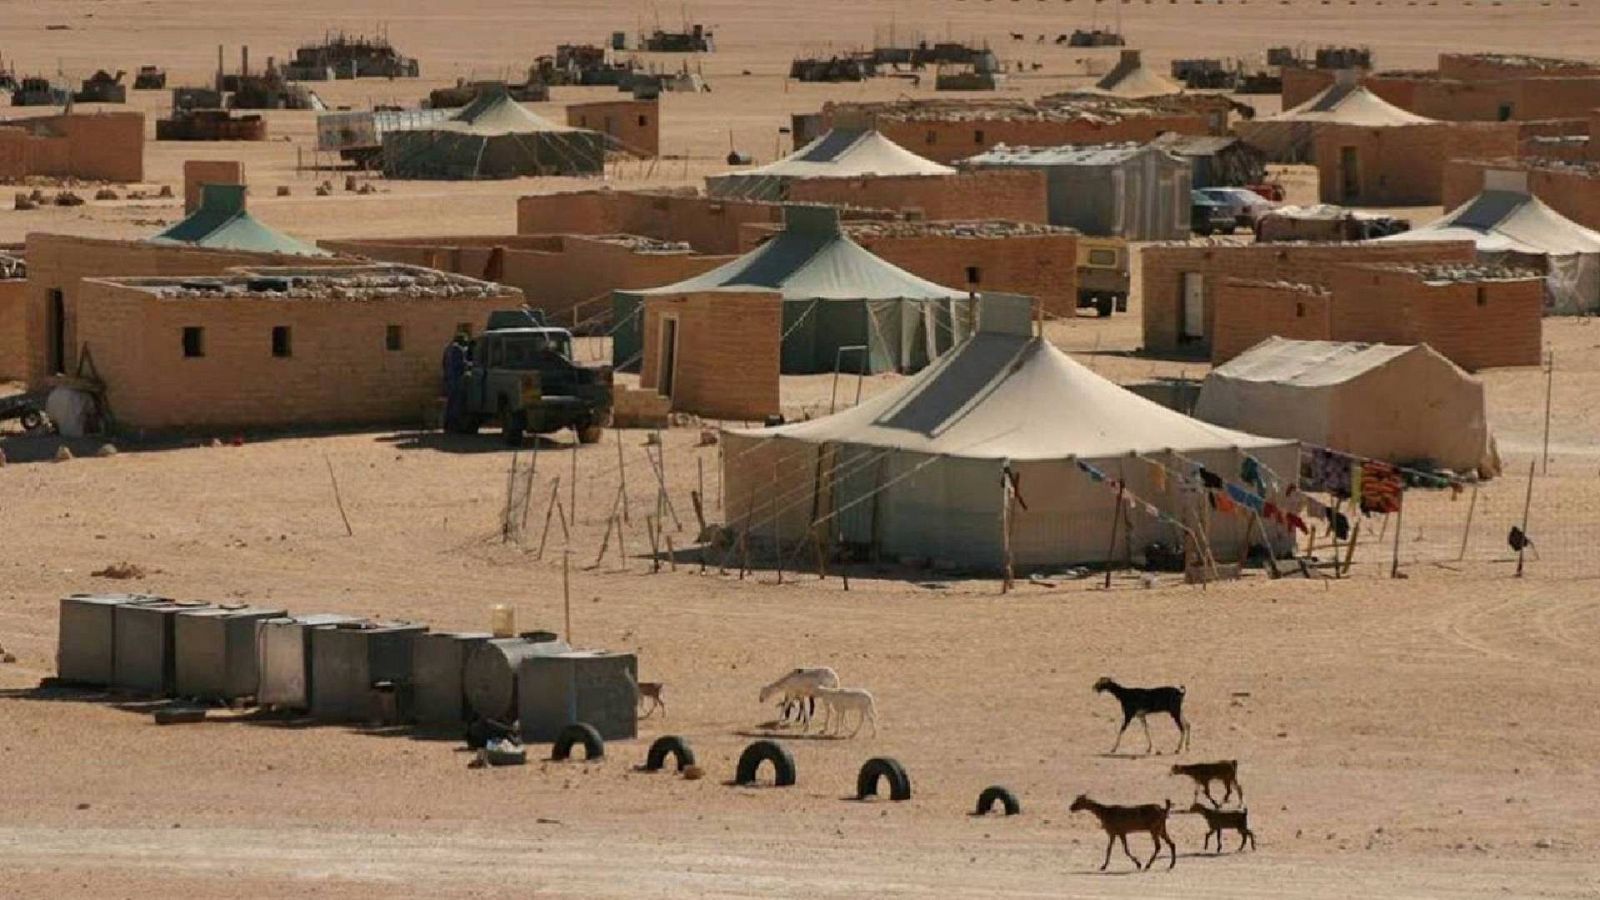 24 horas - España cambia su postura de neutralidad respecto al Sáhara Occidental - Escuchar ahora